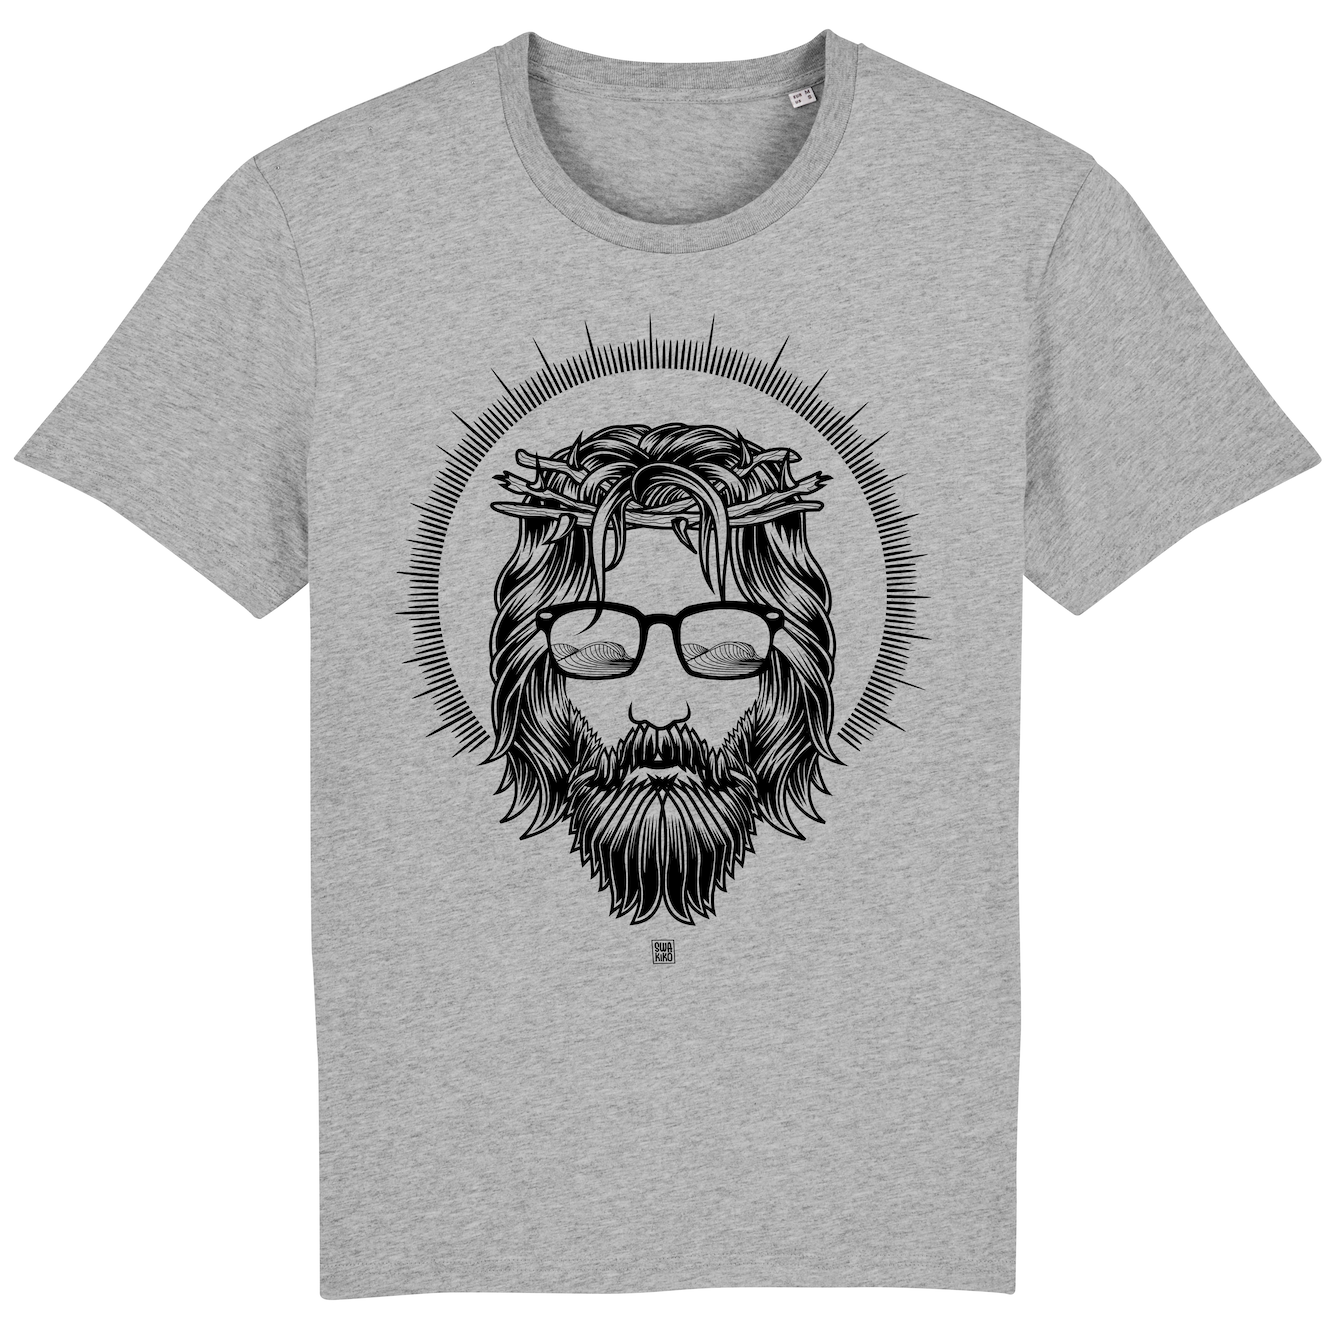 Grijs surf t-shirt met artwork van meneer van Nazareth met zonnebril